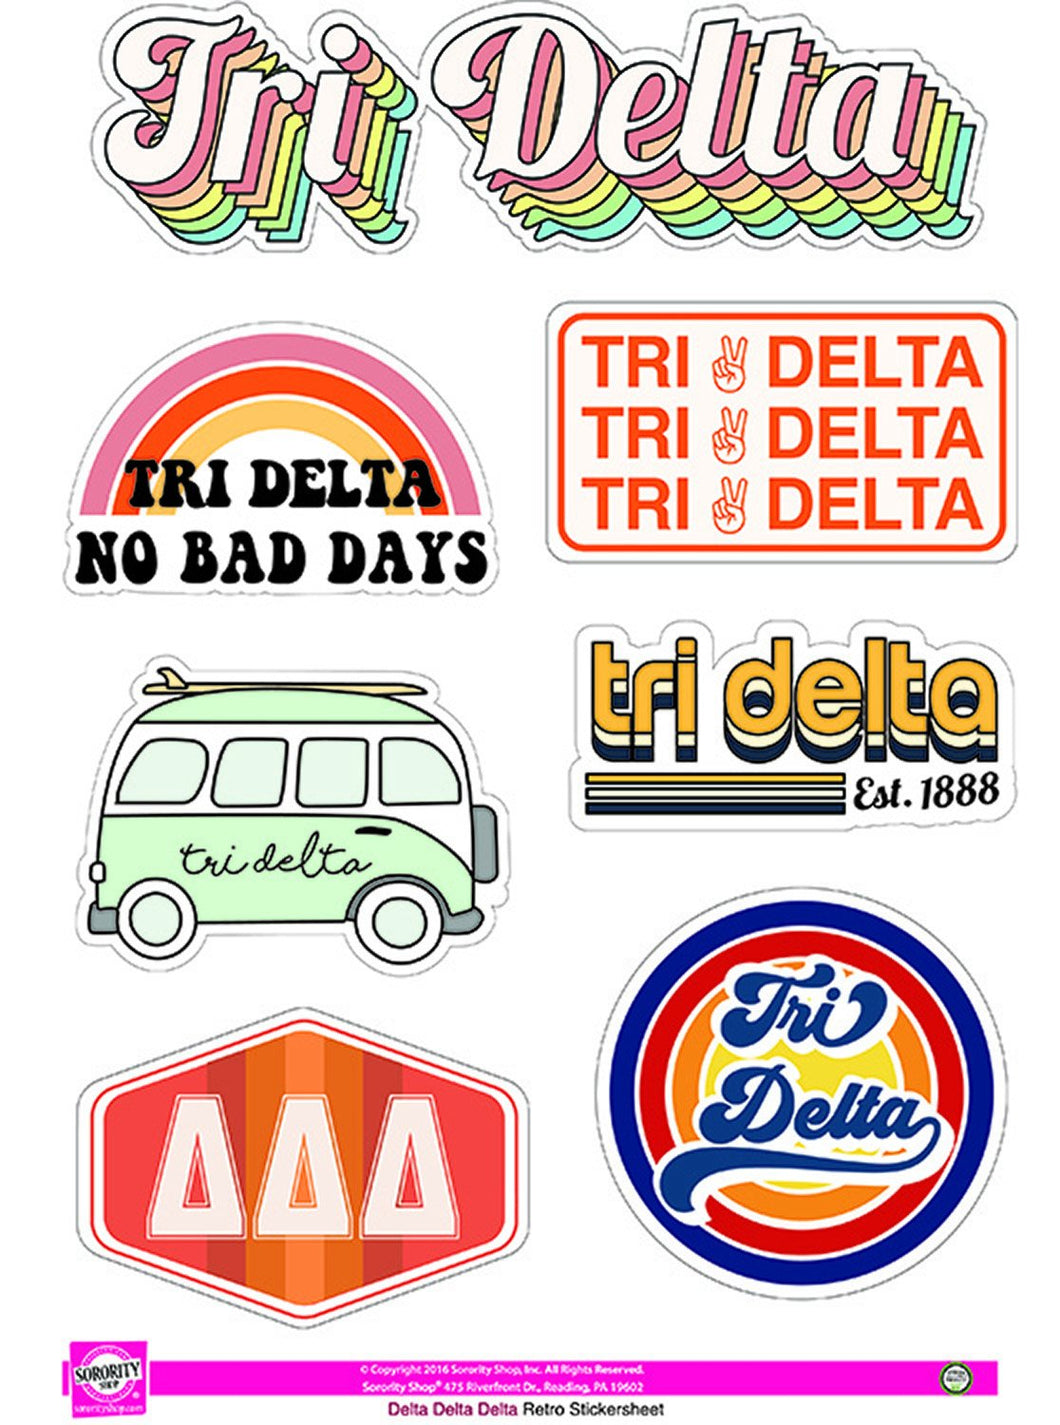 Retro Sticker Sheet - Delta Delta Delta